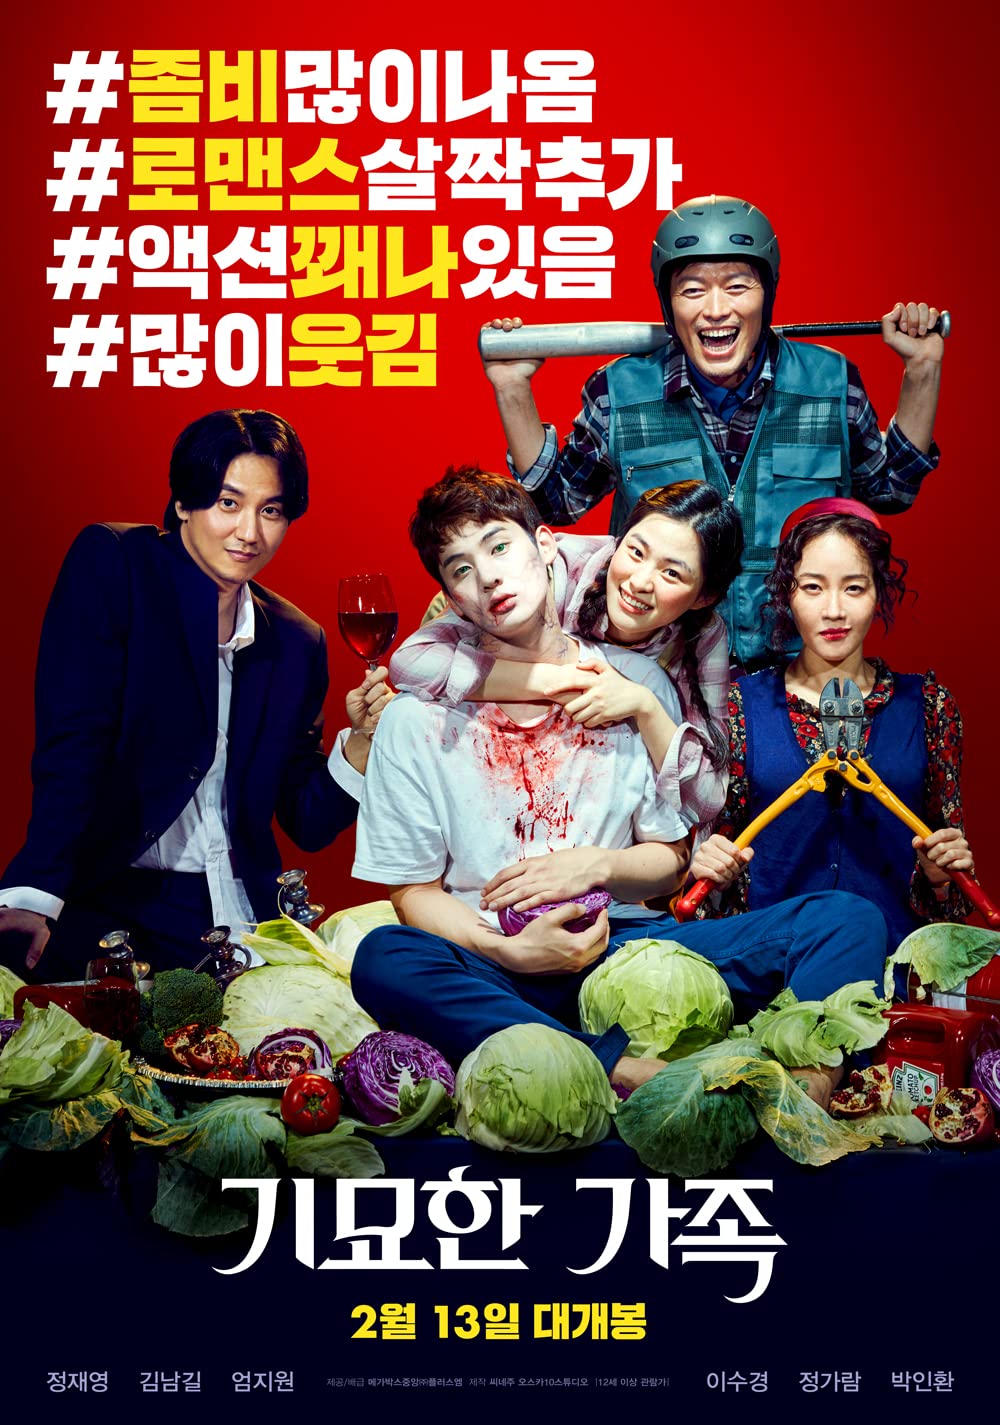 11 Film Korea terbaik bertema zombie di IMDb, penuh adegan menyeramkan